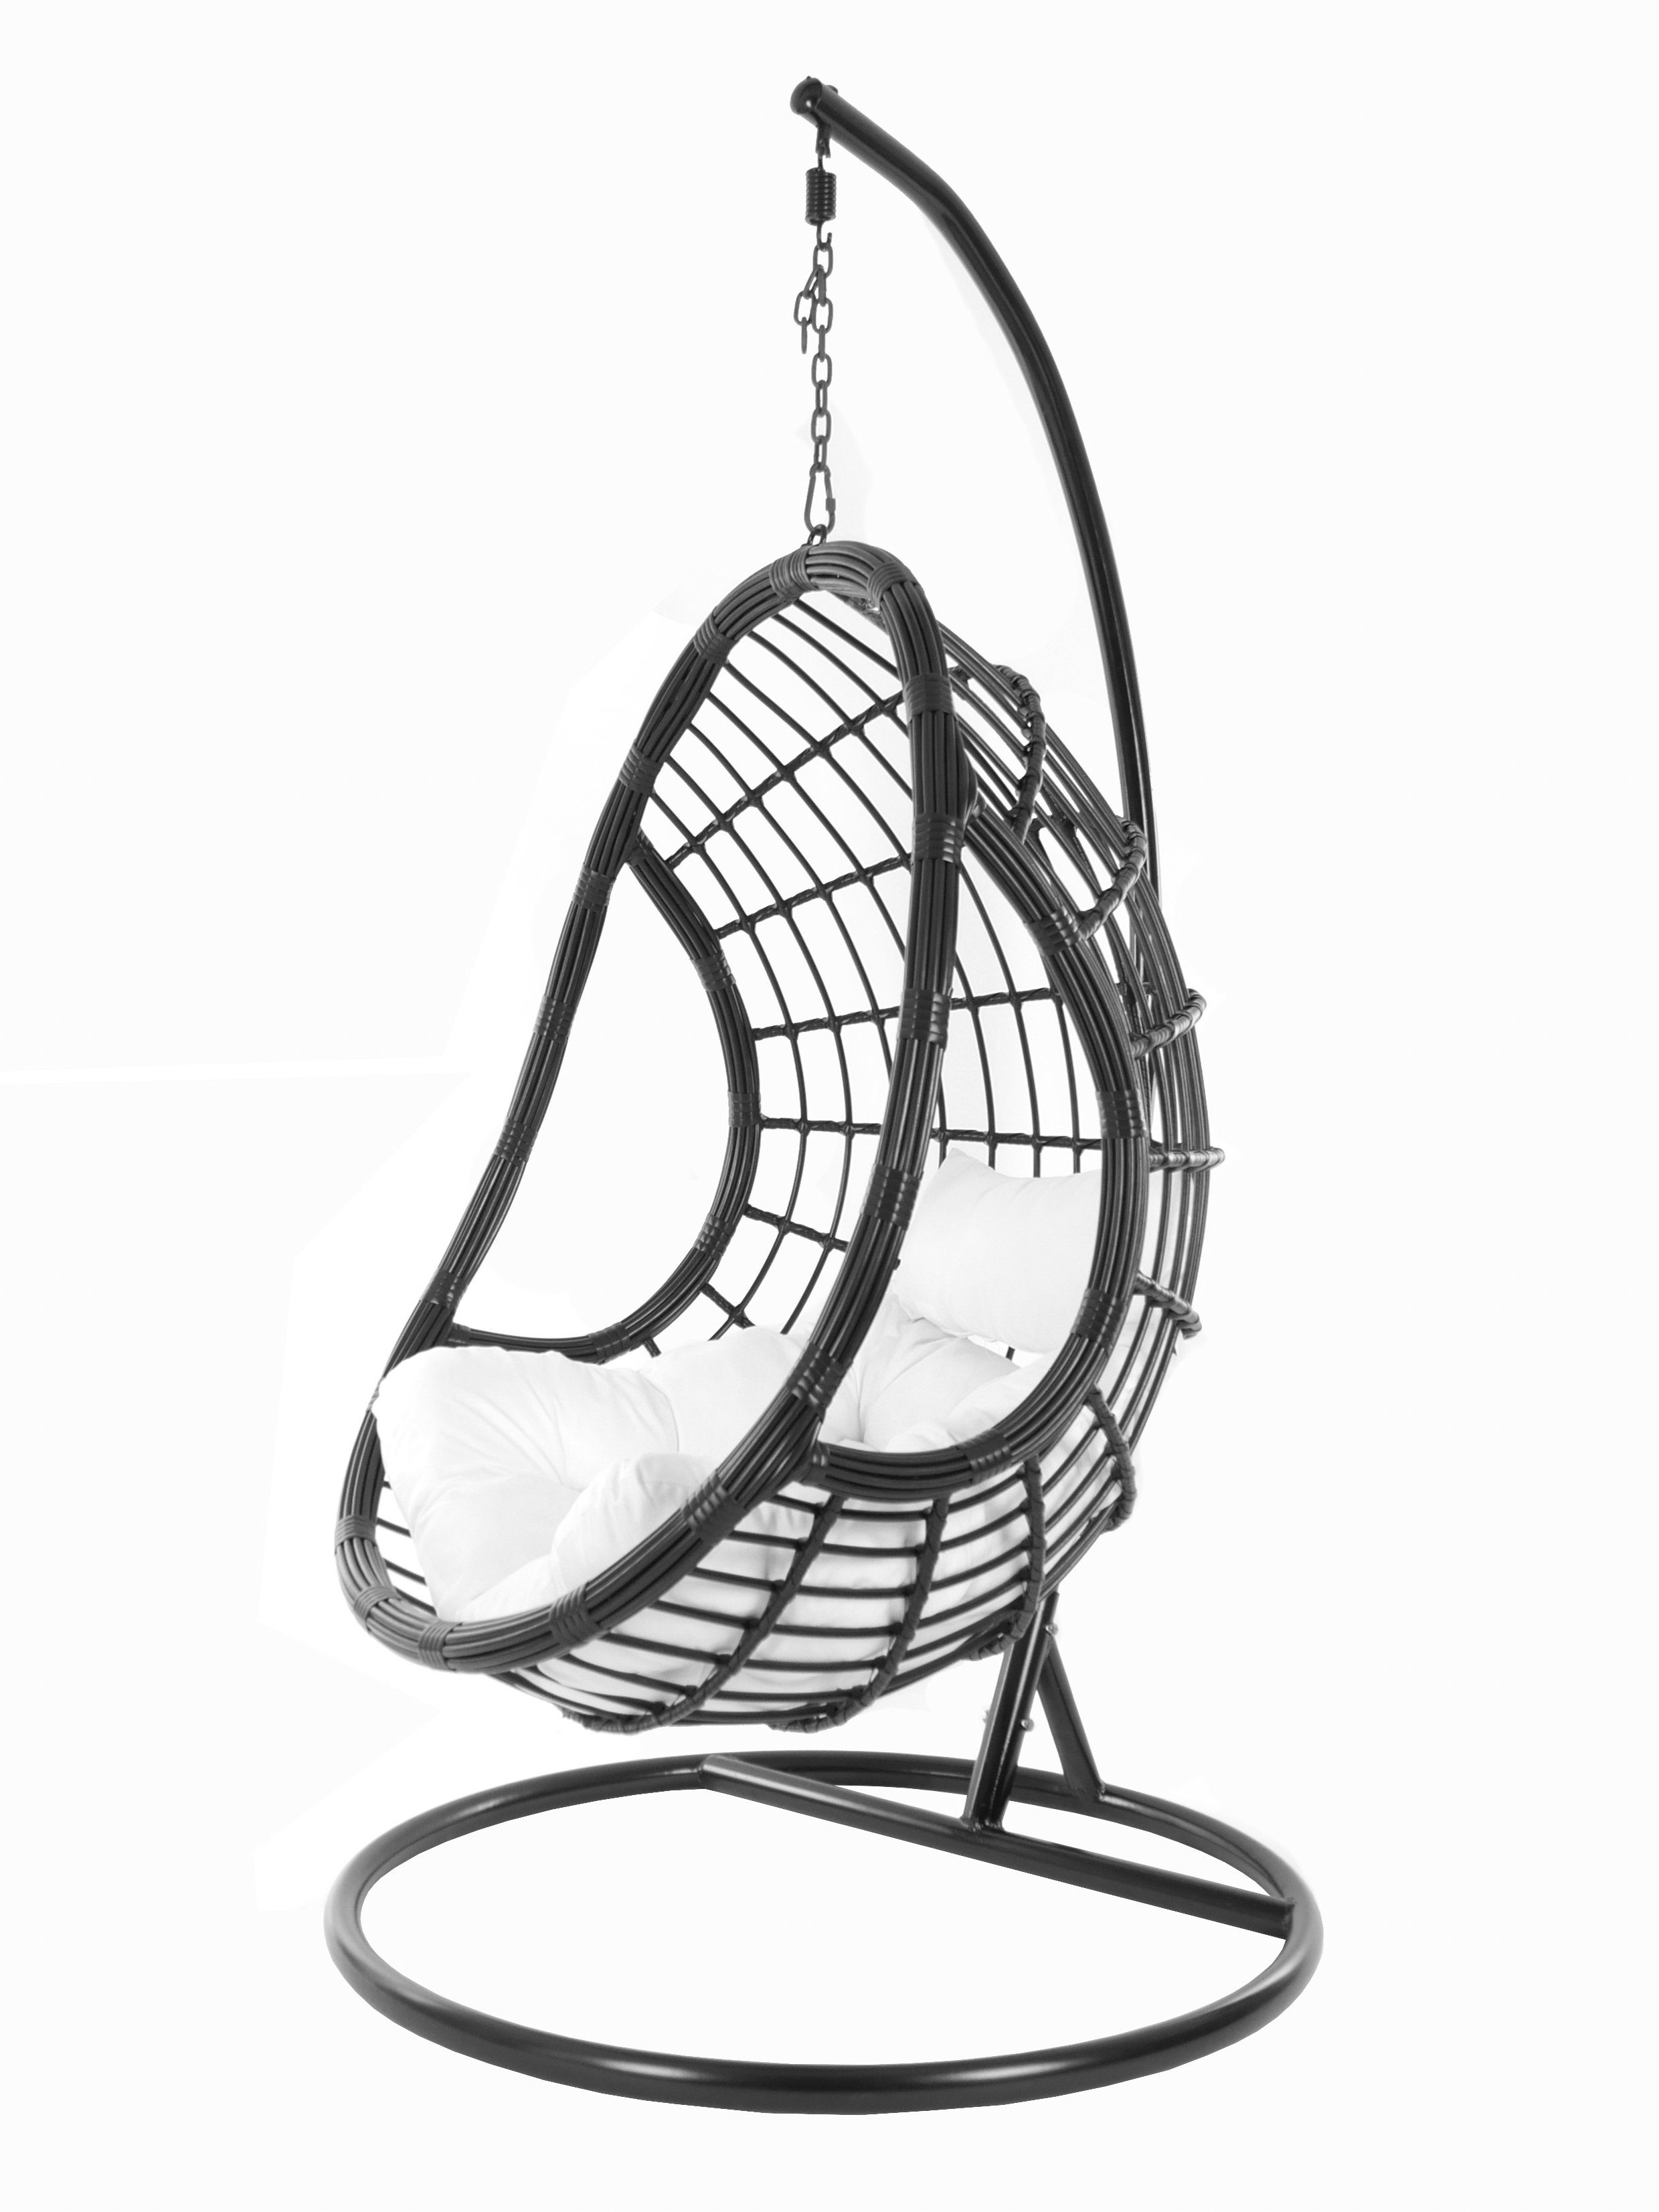 KIDEO Hängesessel PALMANOVA black, Swing Chair, schwarz, Loungemöbel,  Hängesessel mit Gestell und Kissen, Schwebesessel, edles Design